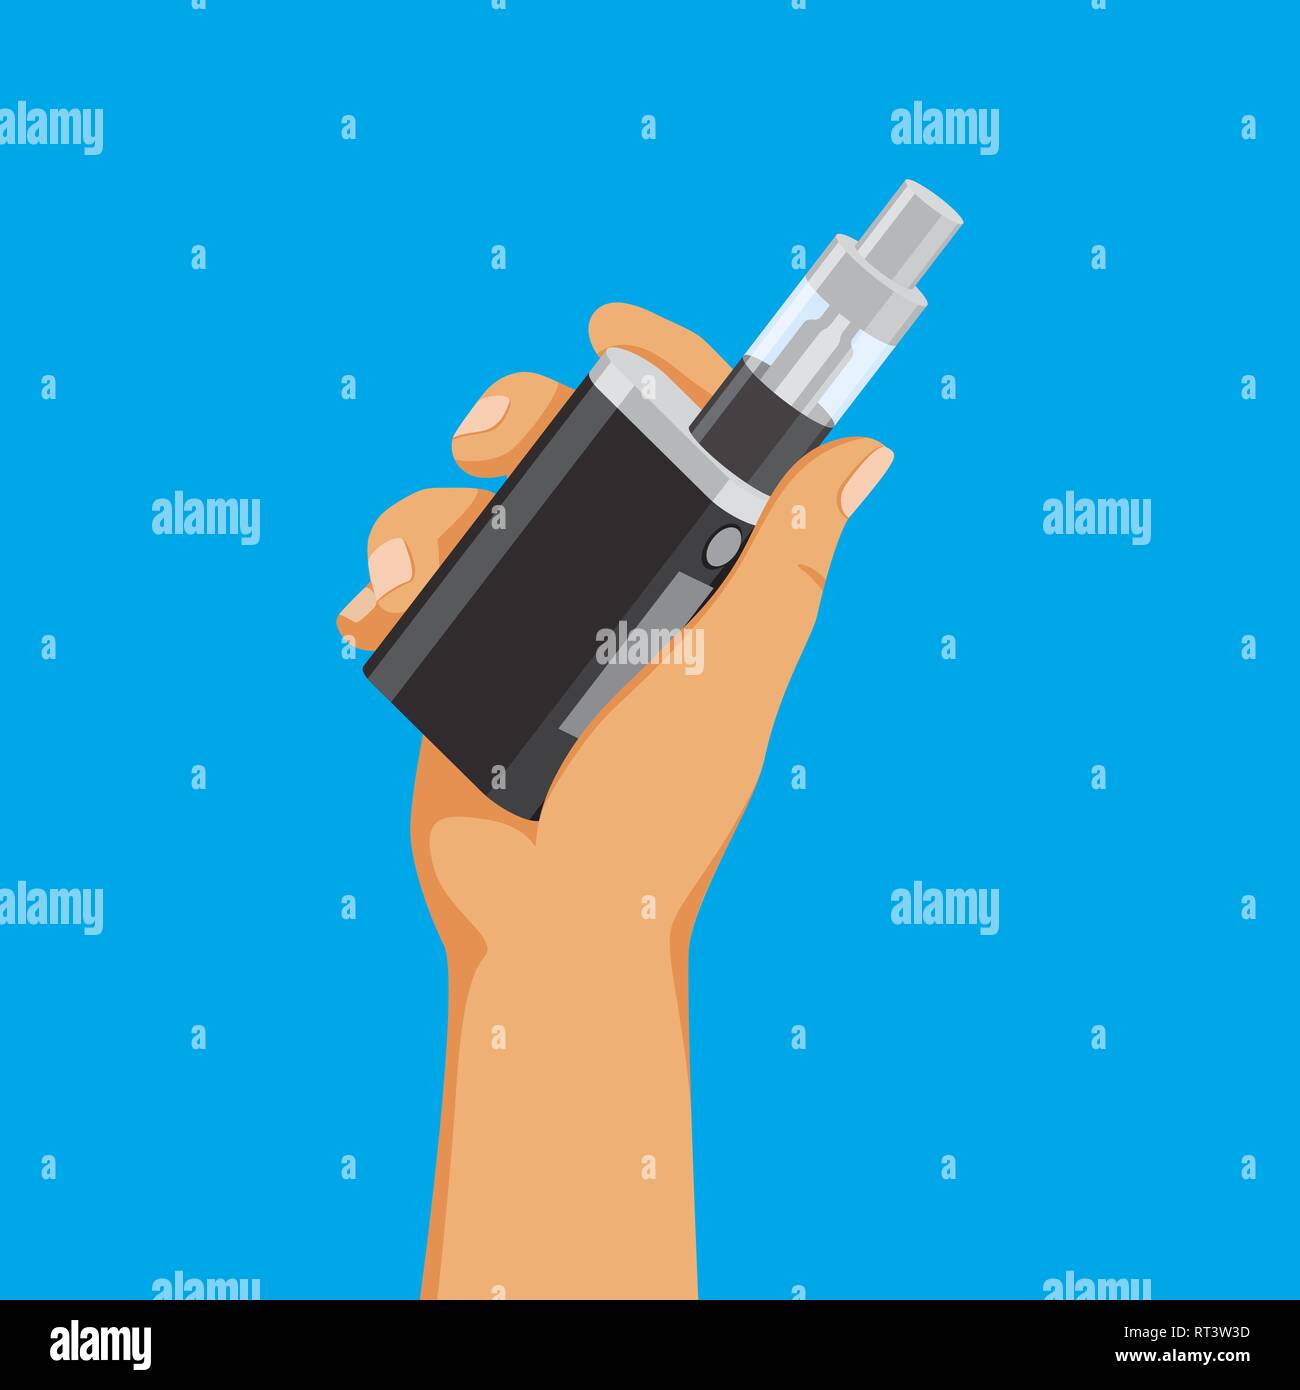 Vape addiction concept, hand holding e-cigarette, vaping stuff, vector illustration. Stock Vector